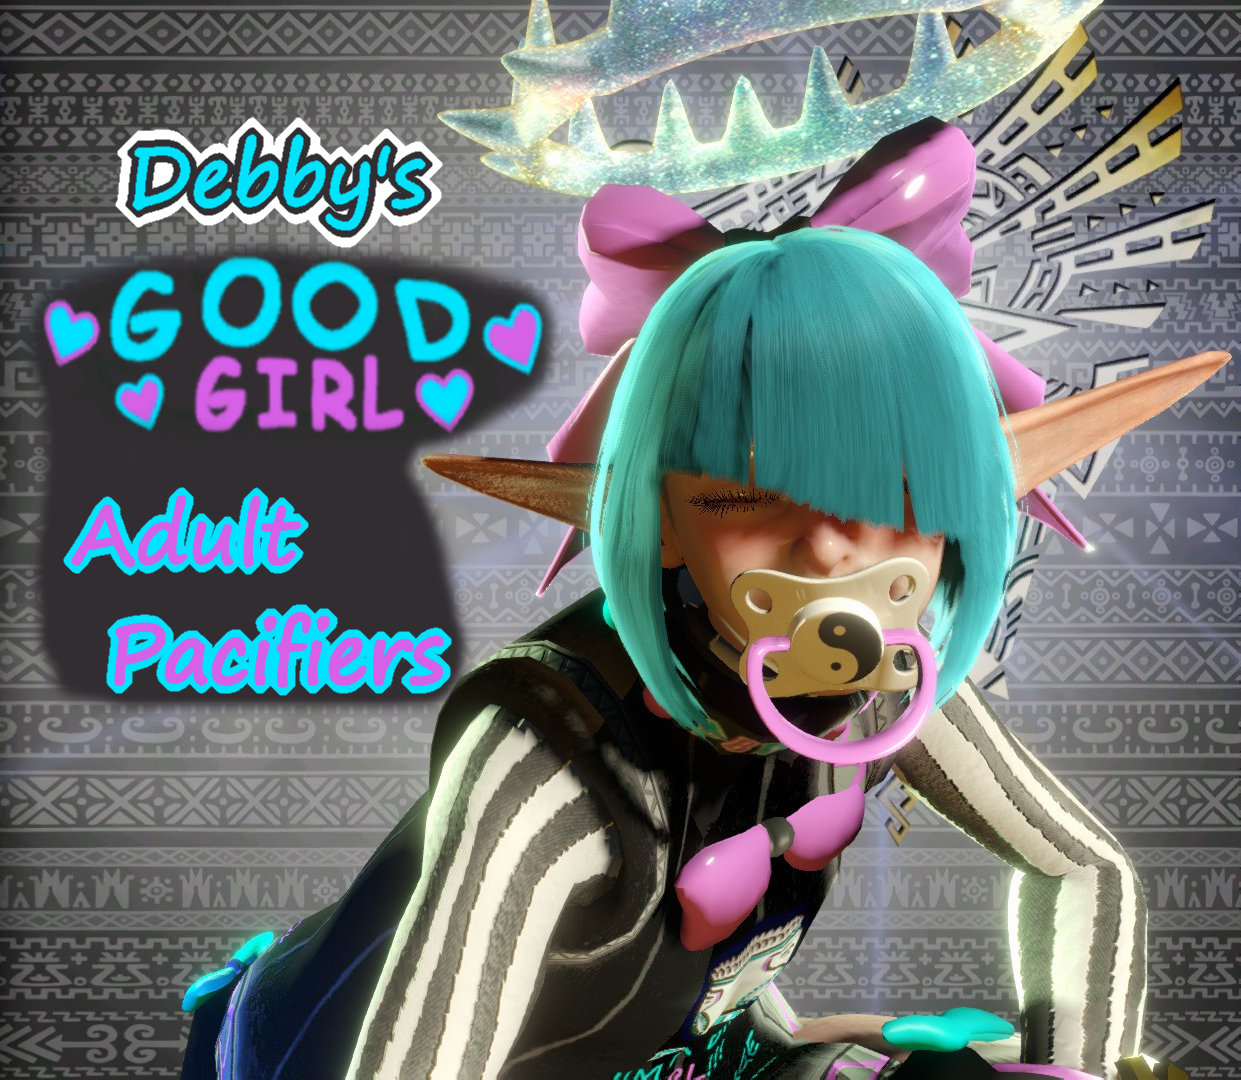 Debby's Good Girl Binkies for Monster Hunter World